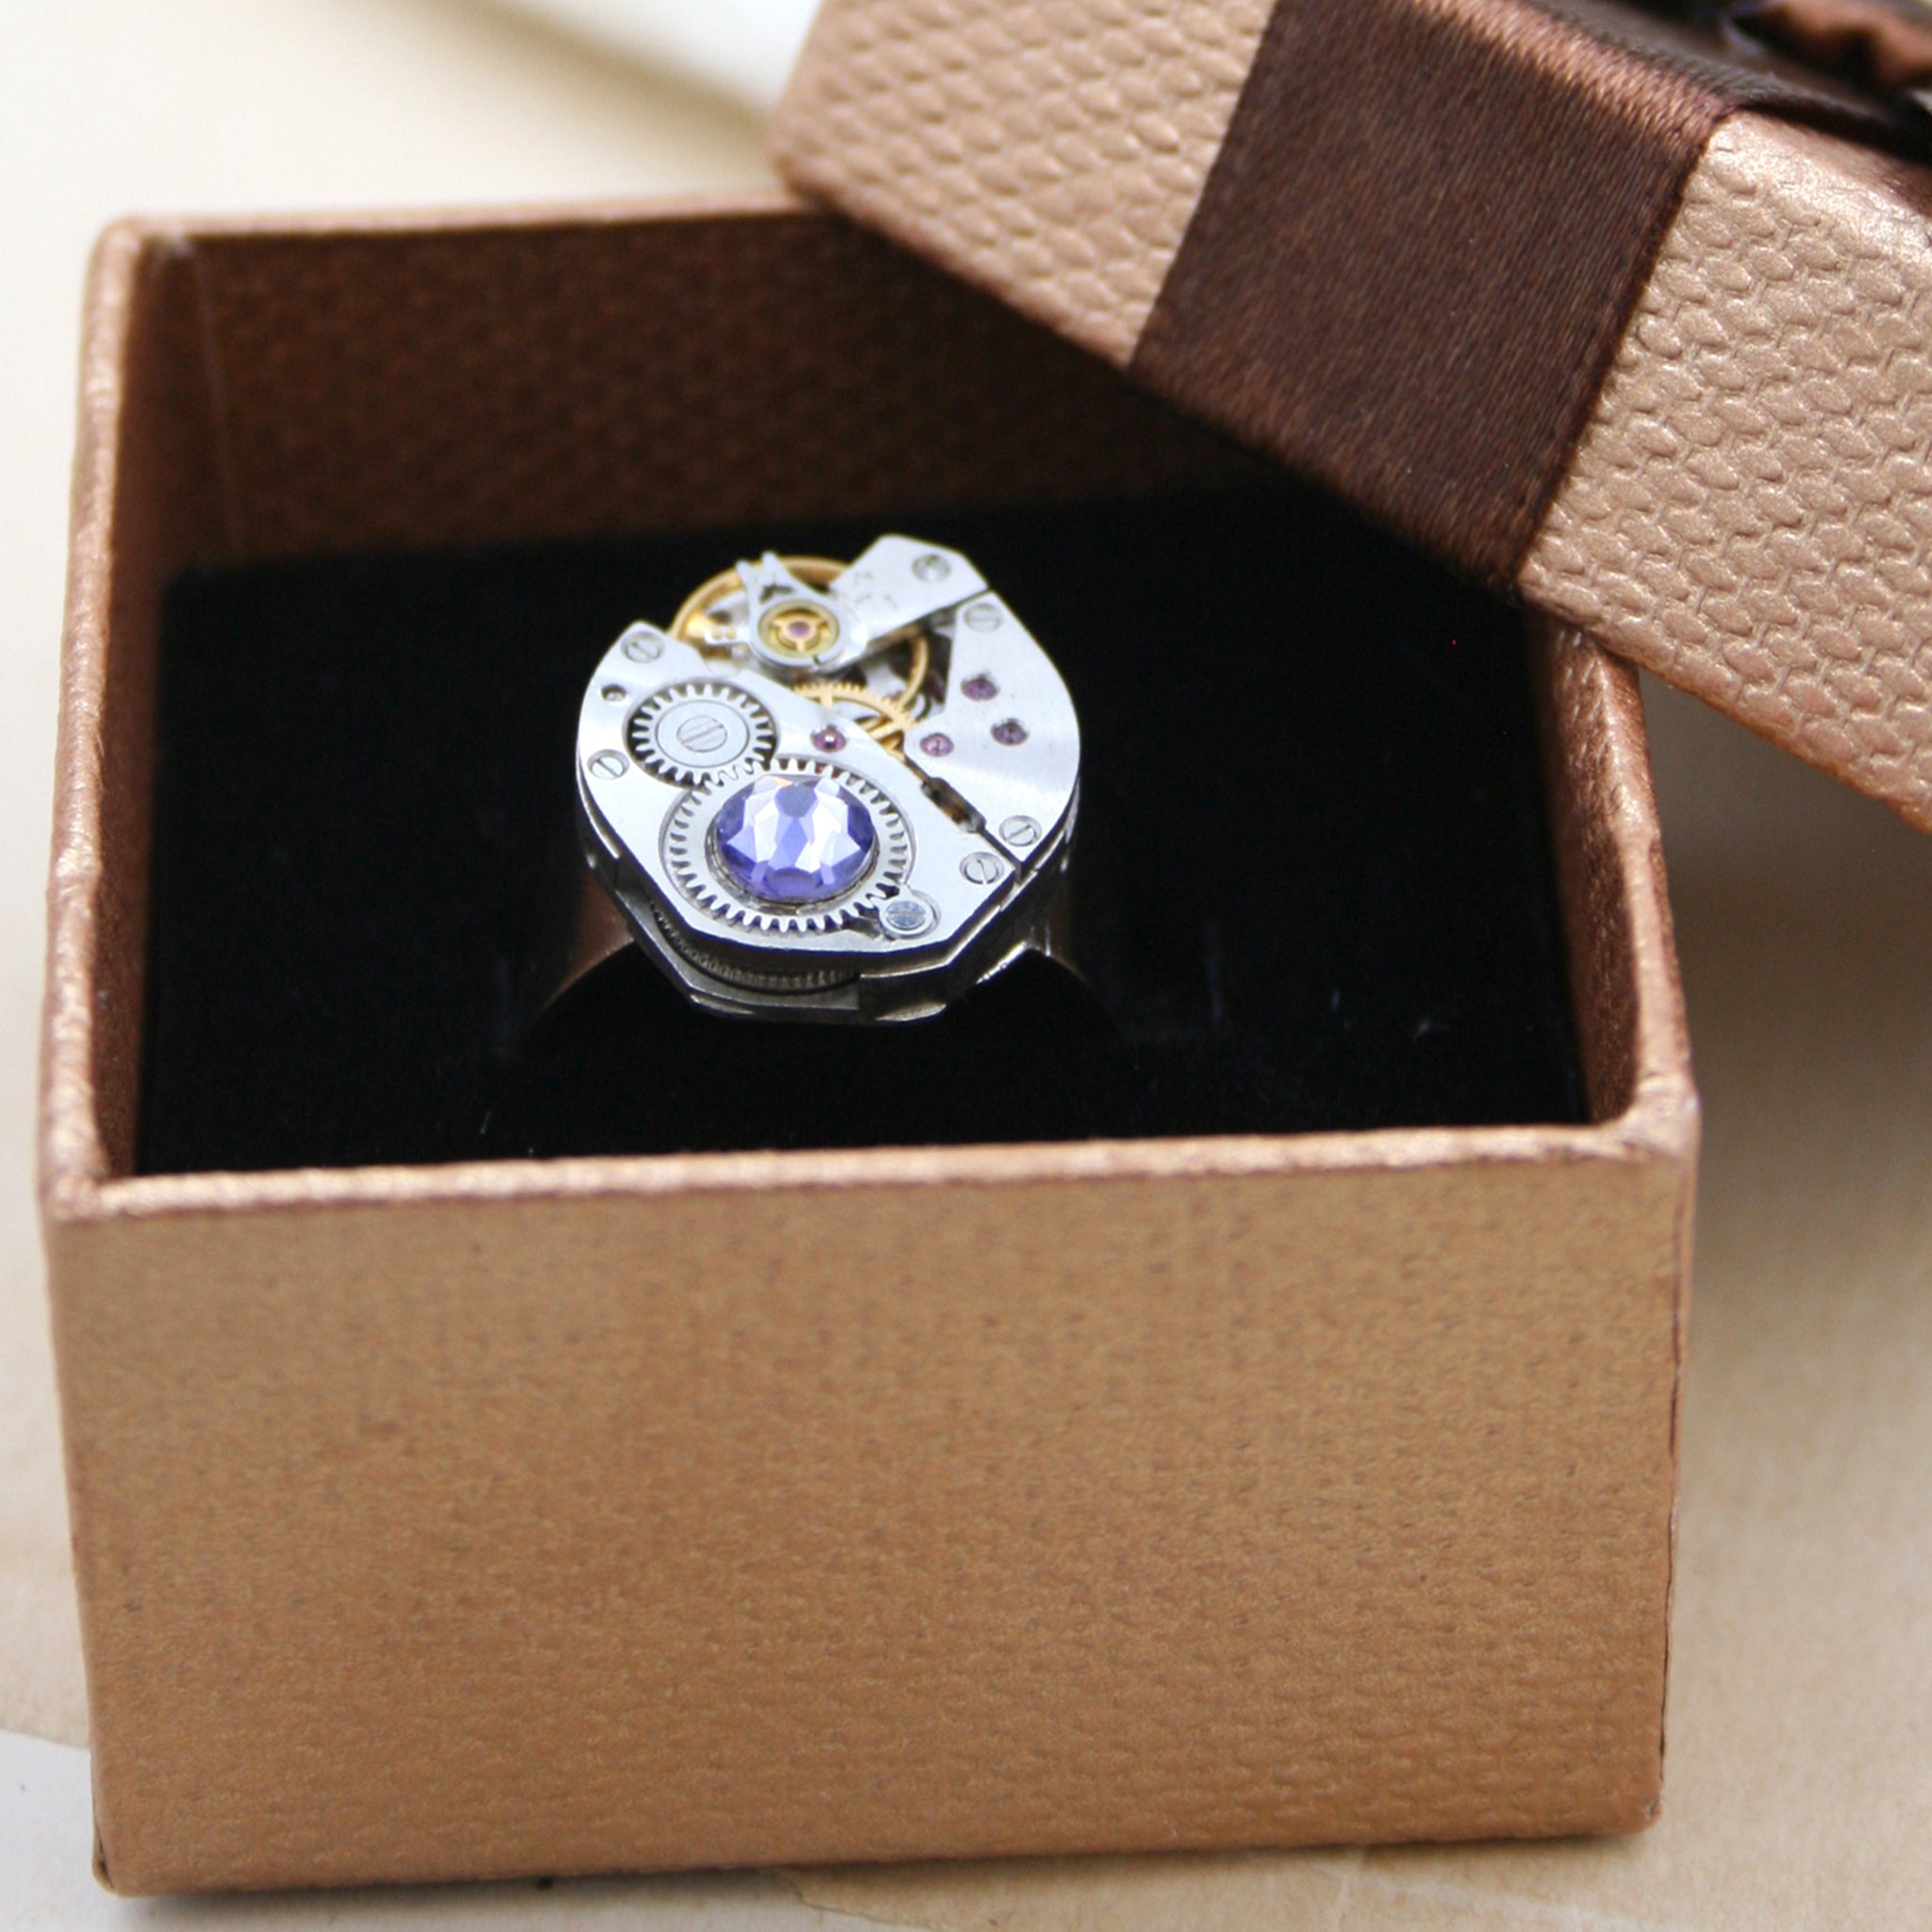 Steampunk Ring with Amethyst Birthstone in a presentation box